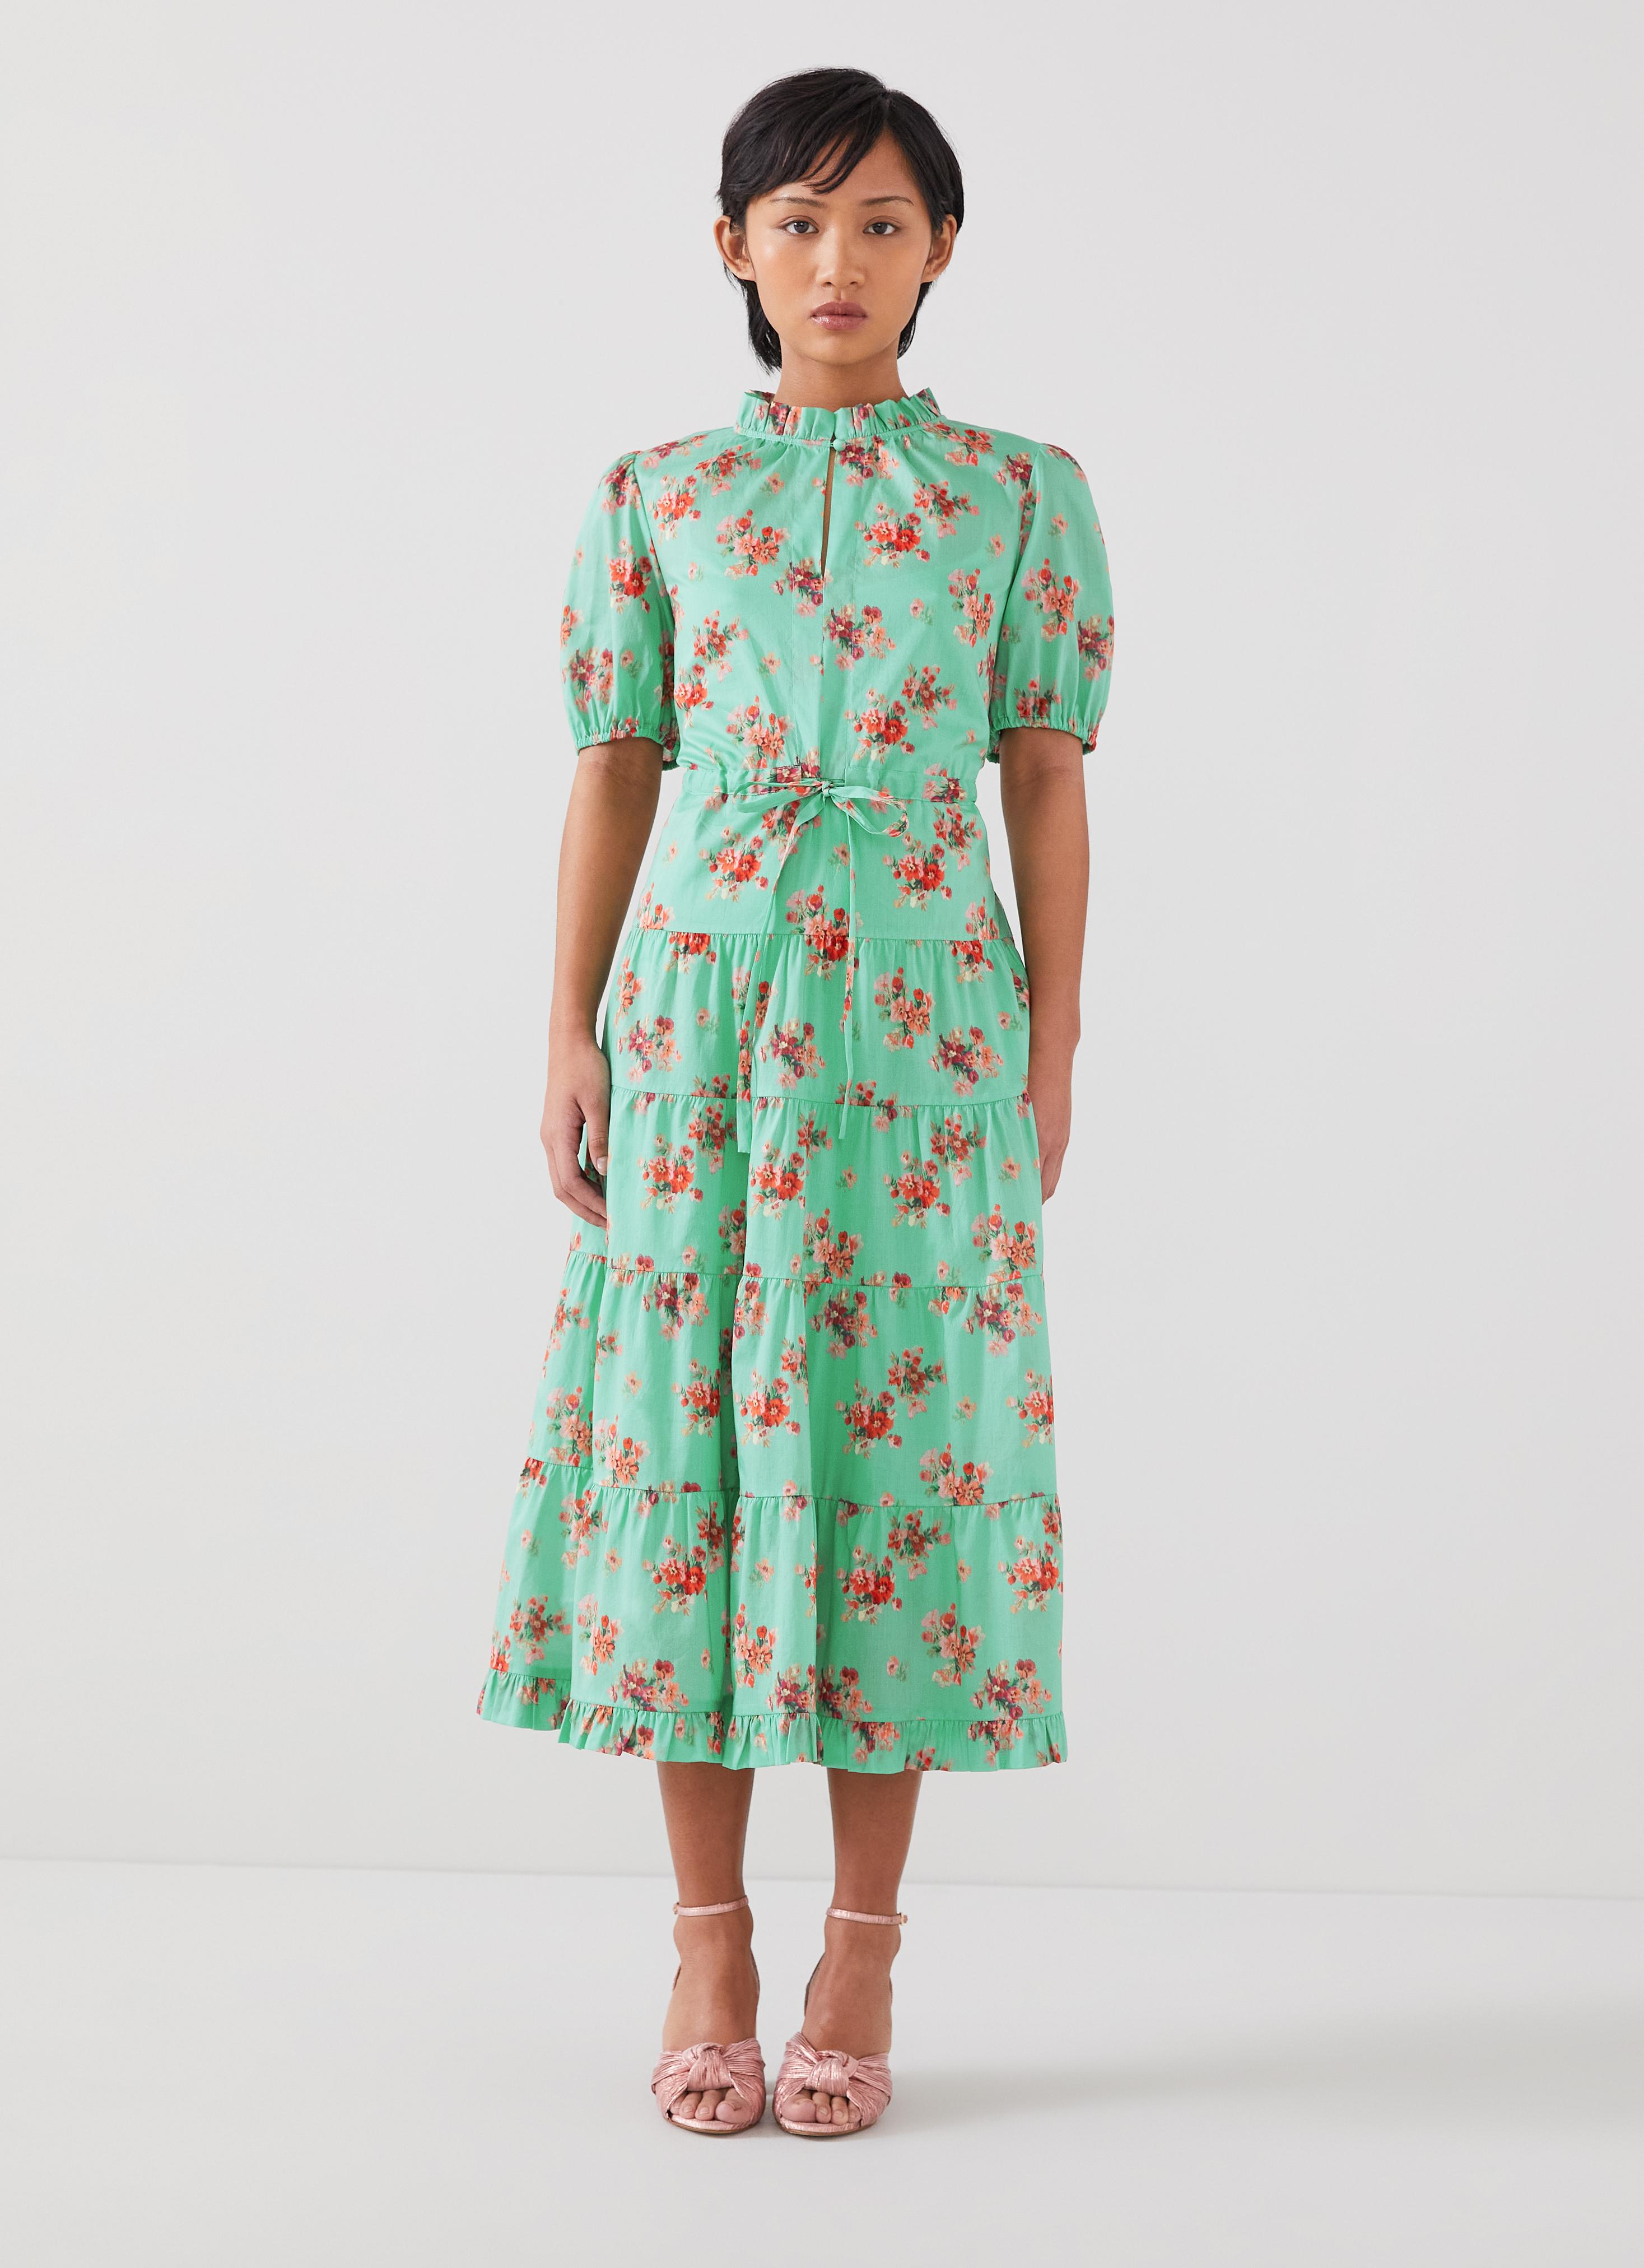 Designer Flower Print Midi Size For Women Elegant Half Skirt With High  Waist Pleated Skirts From Wg7900, $31.94 | DHgate.Com